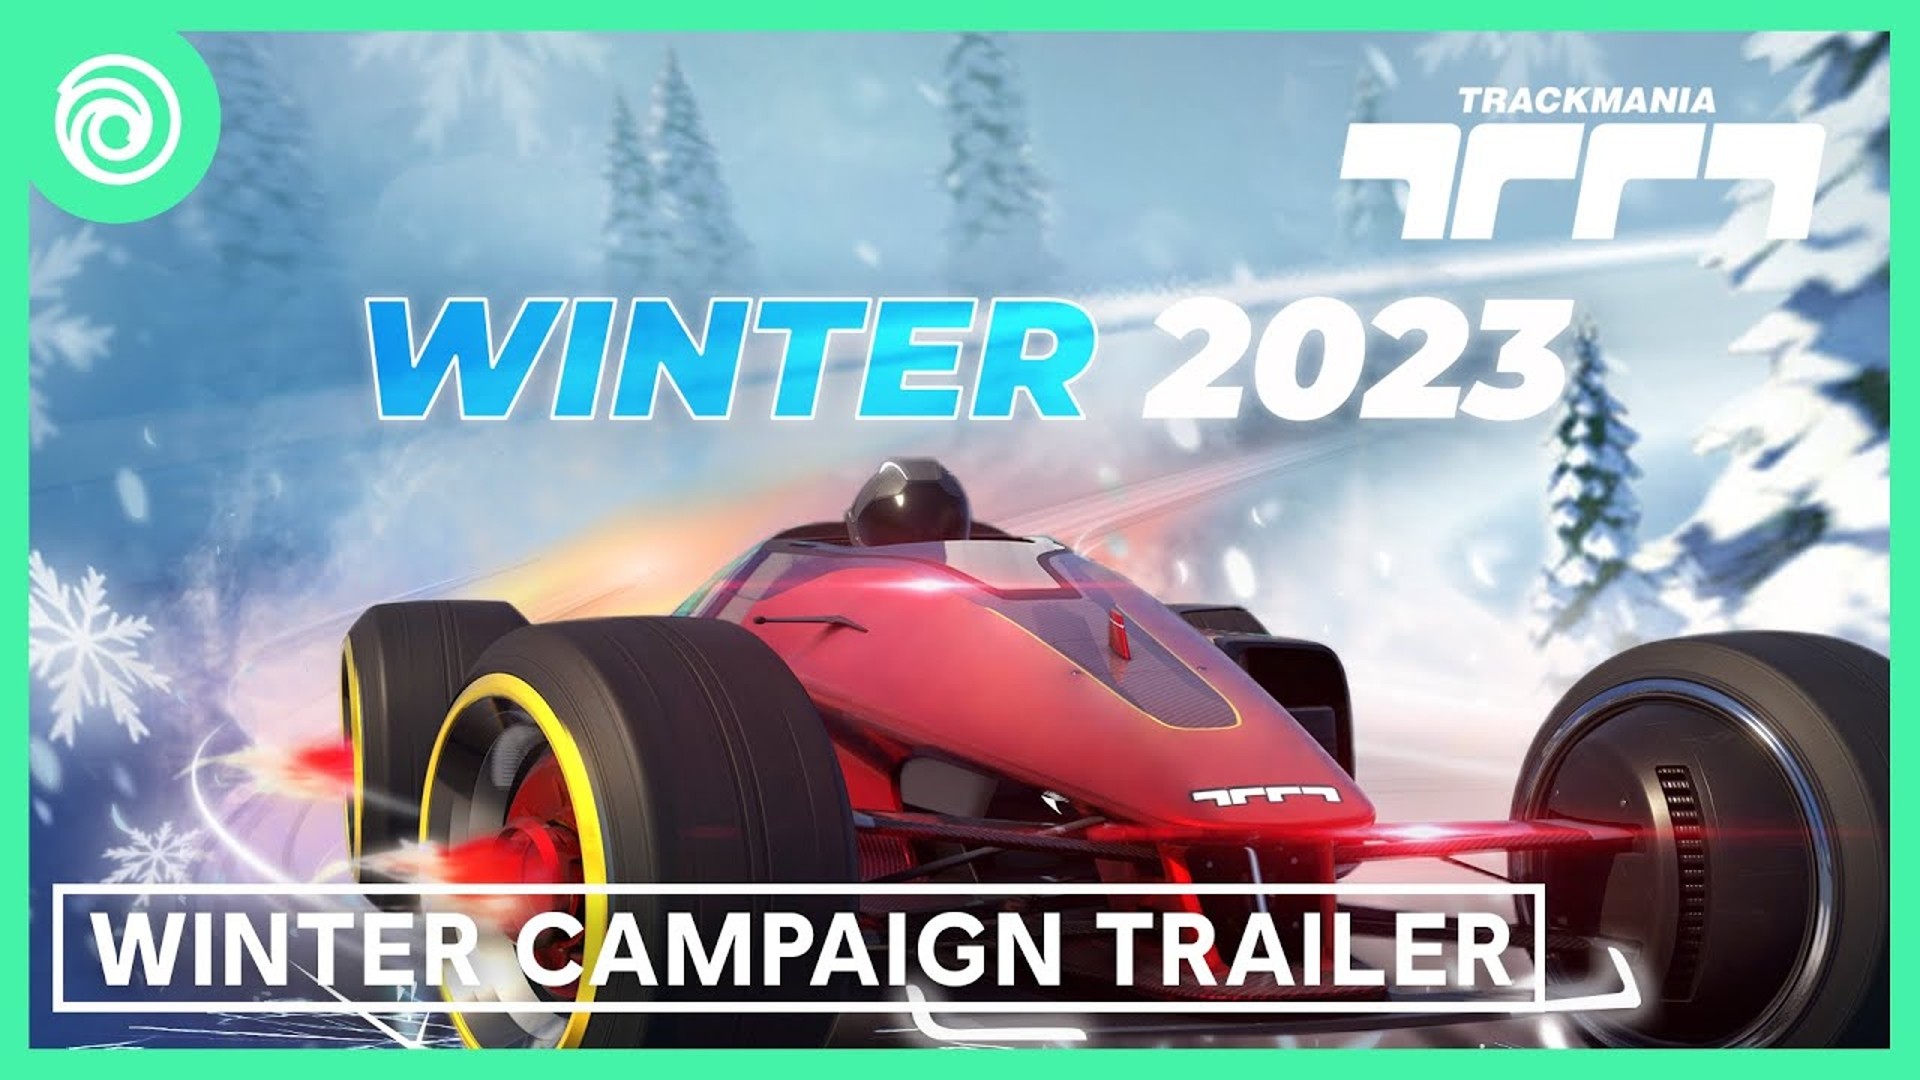 El tráiler de Trackmania muestra la campaña de invierno de enero de 2023